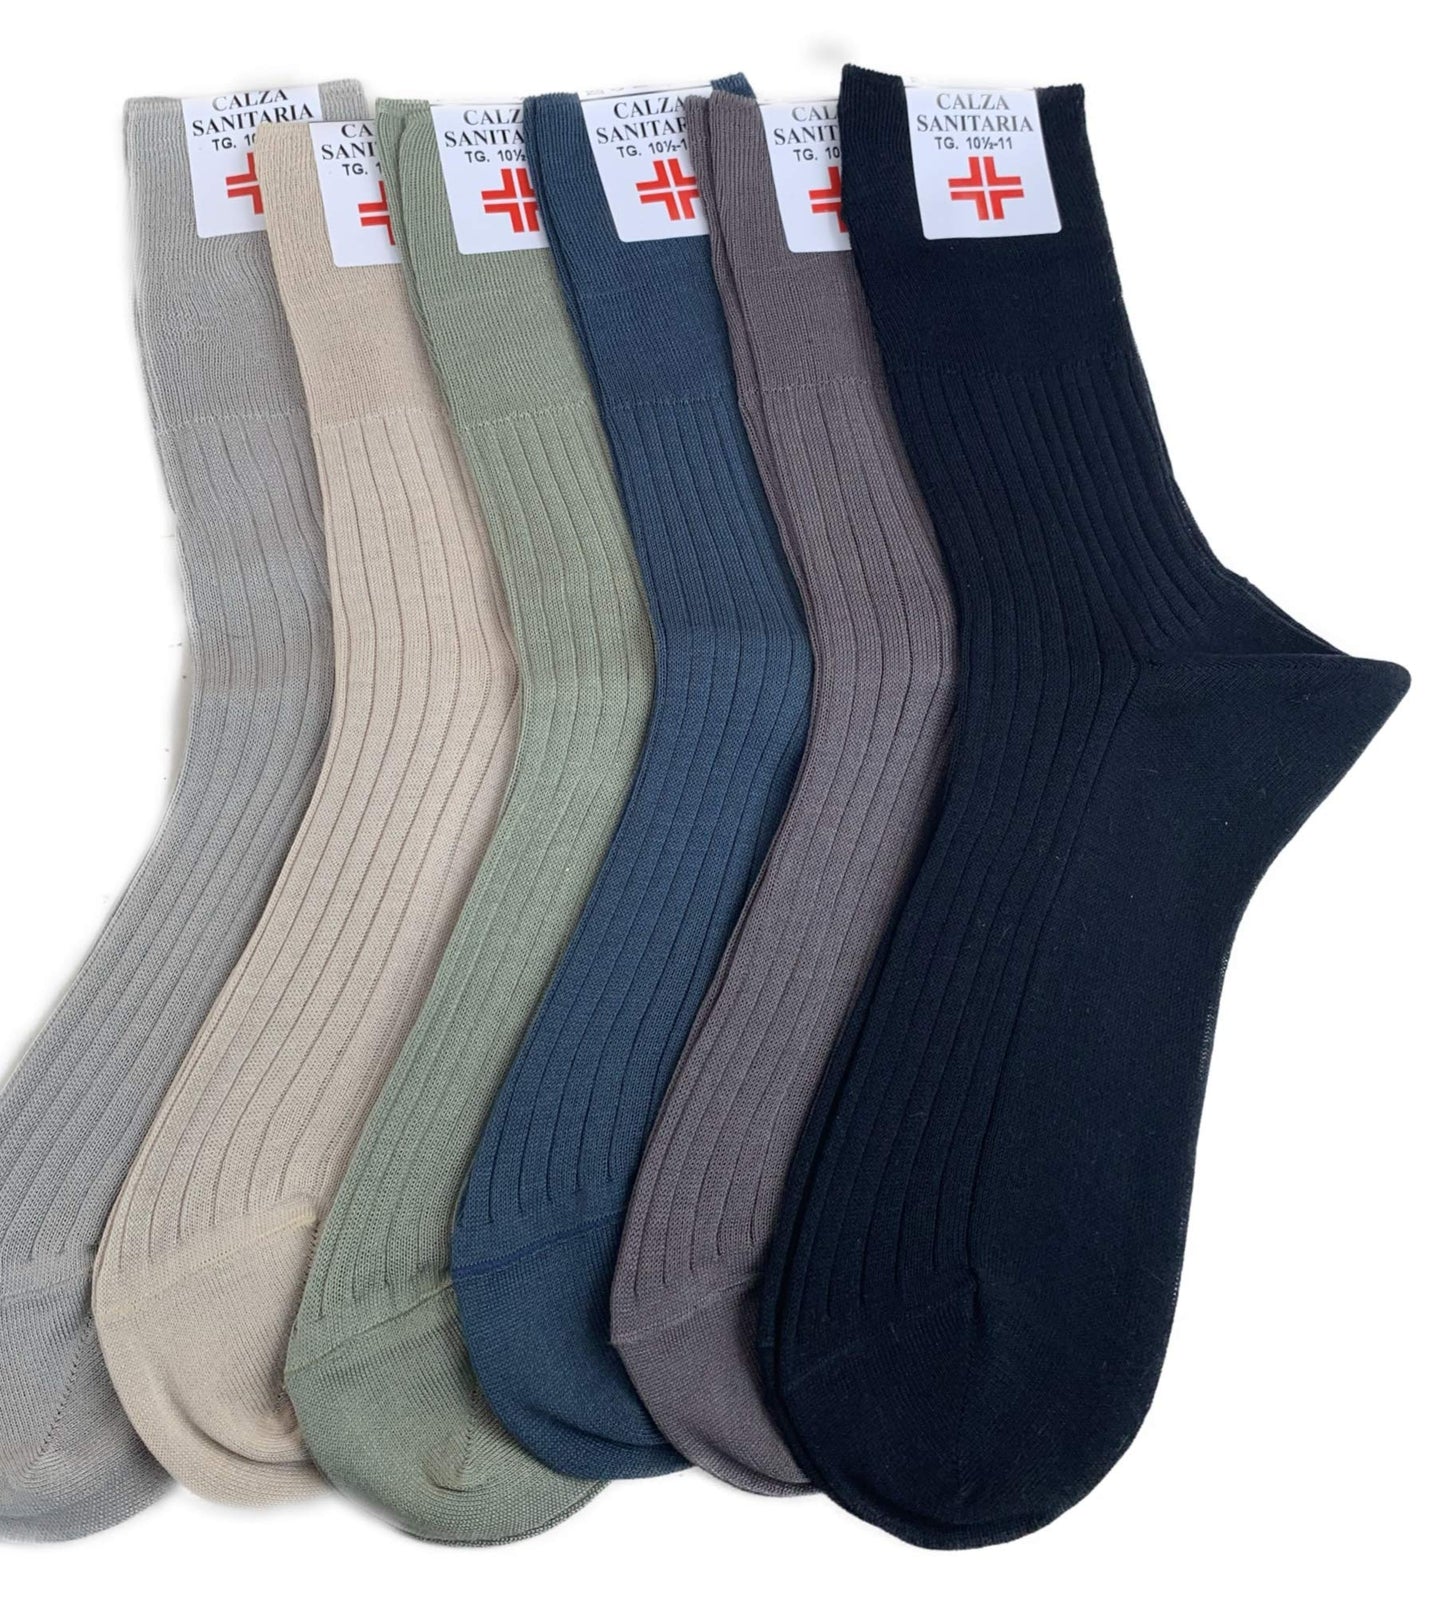 Lucchetti Socks Milano 6 PAIA calze da uomo SANITARIE filo di scozia 100% cotone rimagliate Made in Italy (11½12 43-46, Assortiti Chiari)